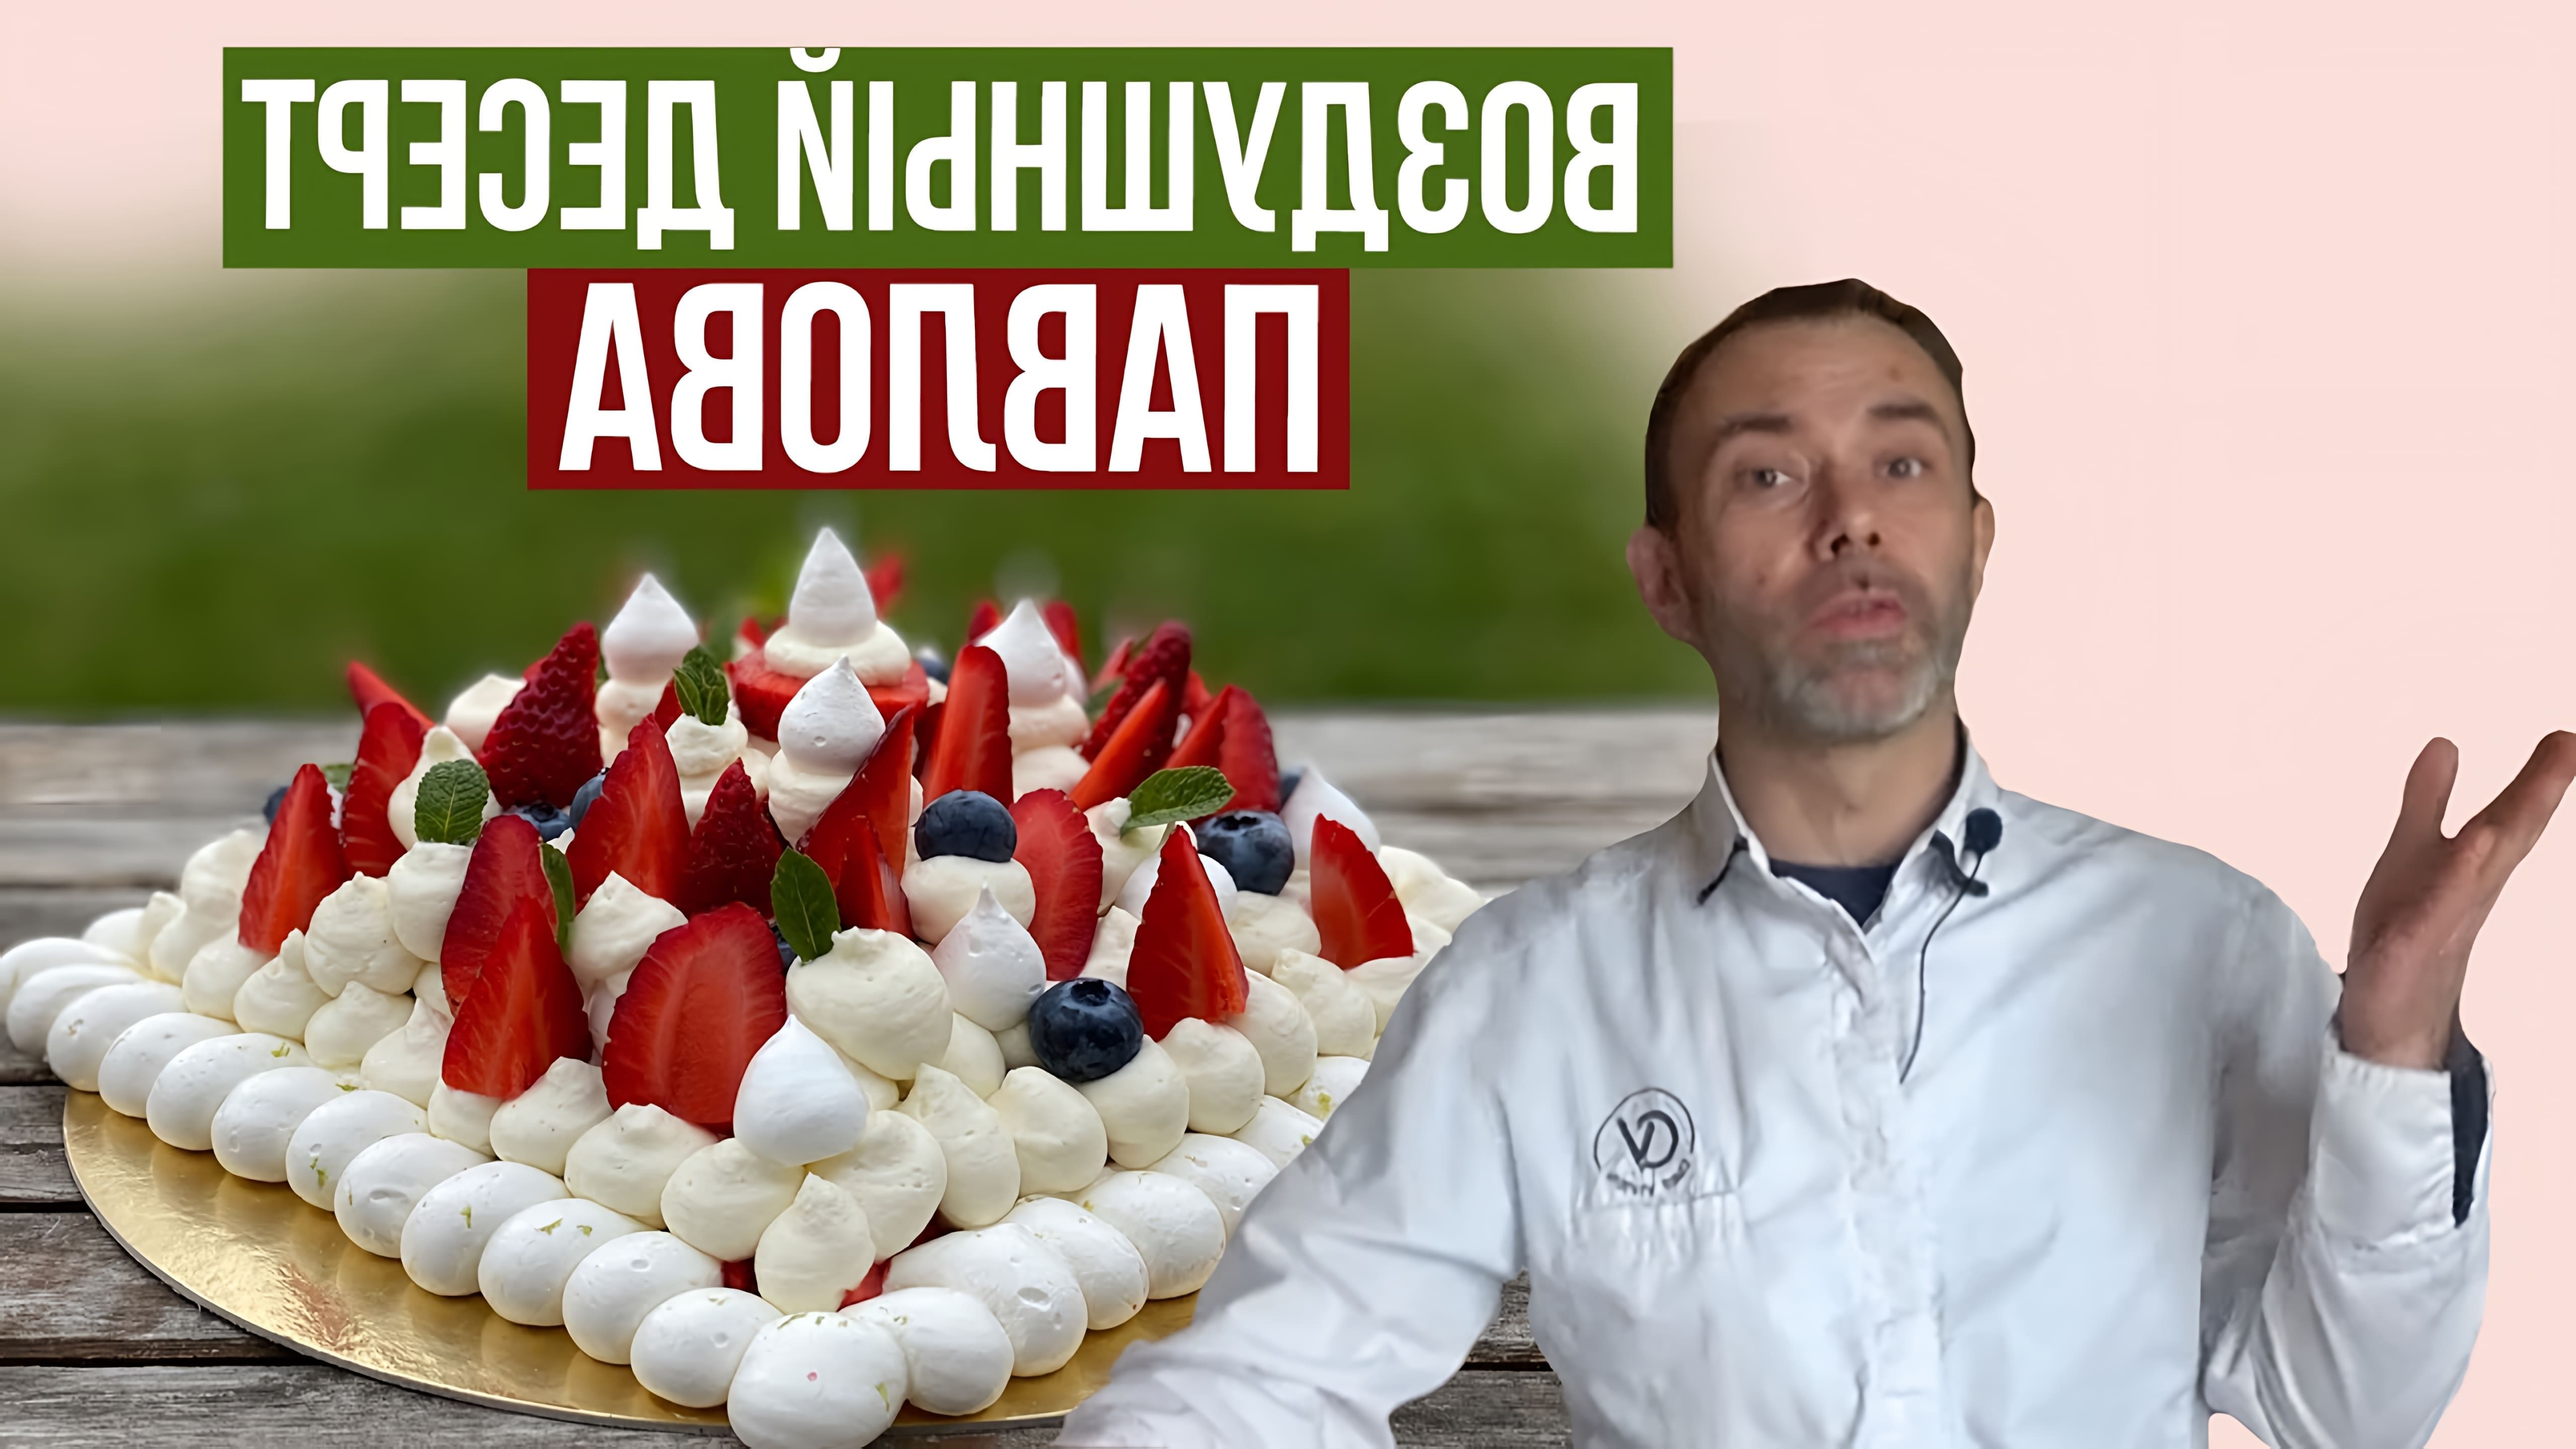 В этом видео демонстрируется процесс приготовления десерта "Павлова" из французского безе с ягодами